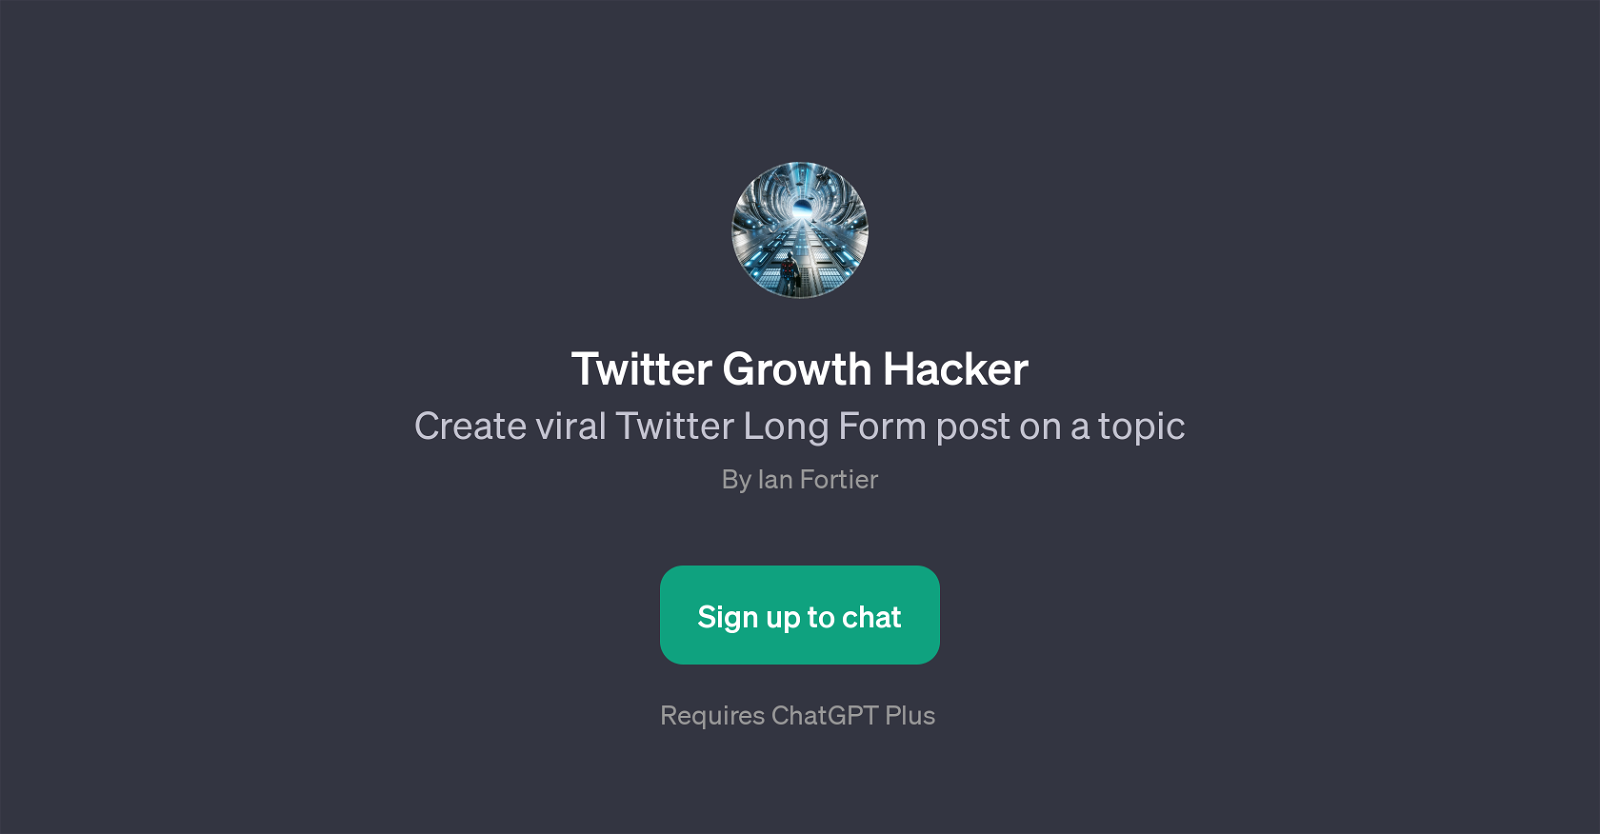 Twitter Growth Hacker website